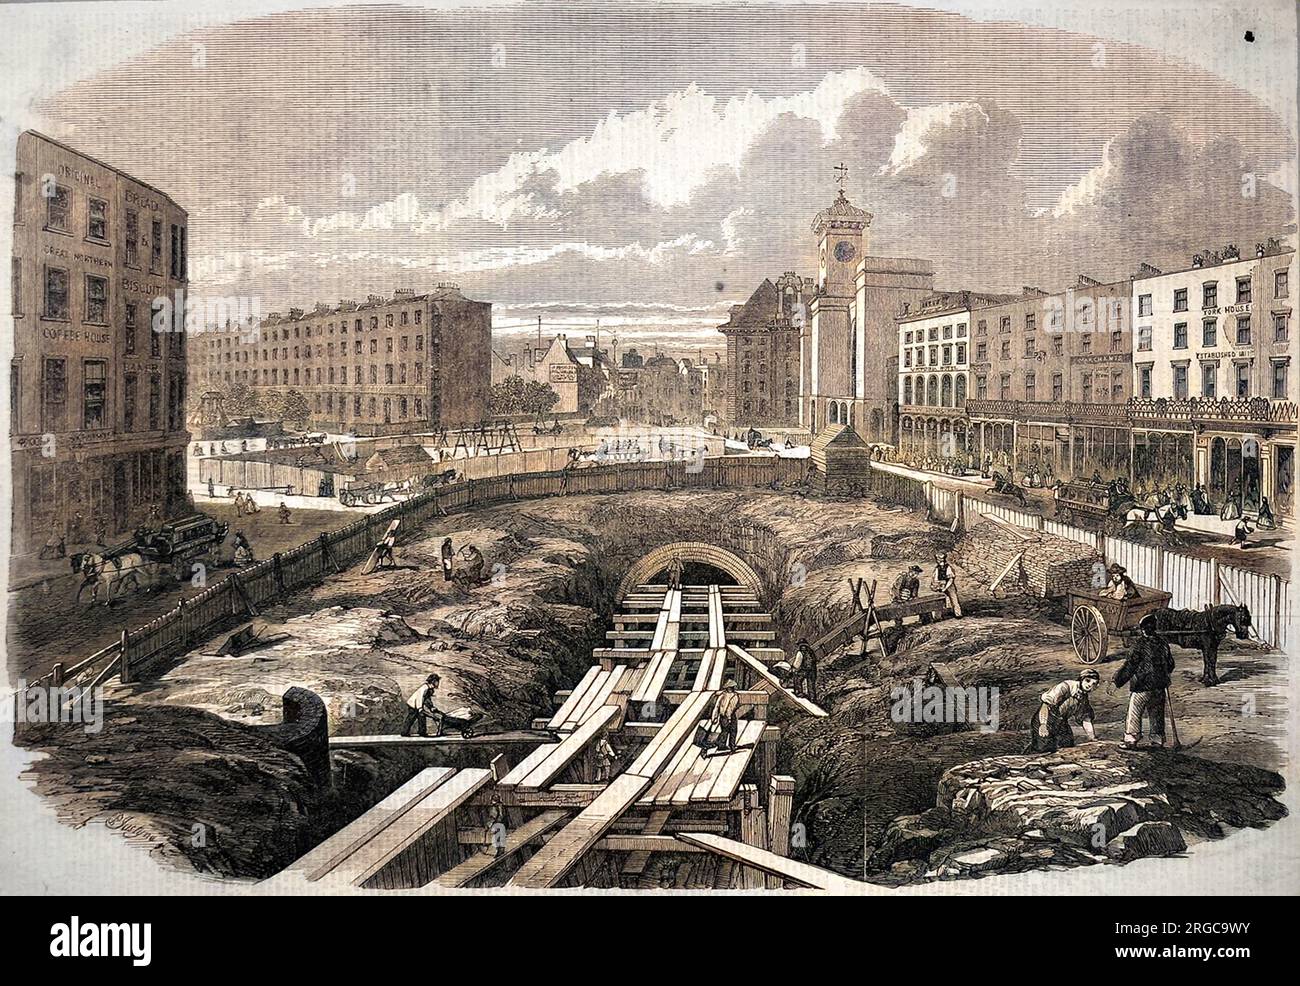 Die Bauarbeiten an King's Cross, die einen Teil der Mertropolitan-U-Bahn beherbergen sollen, sind im Gange. Der erste Abschnitt der Untergrundbahn wurde 1863 fertiggestellt, demnächst wird eine Erweiterung nach Westminster folgen. Es wurden sowohl breite Spurweite als auch Standardspurweite verwendet. Stockfoto